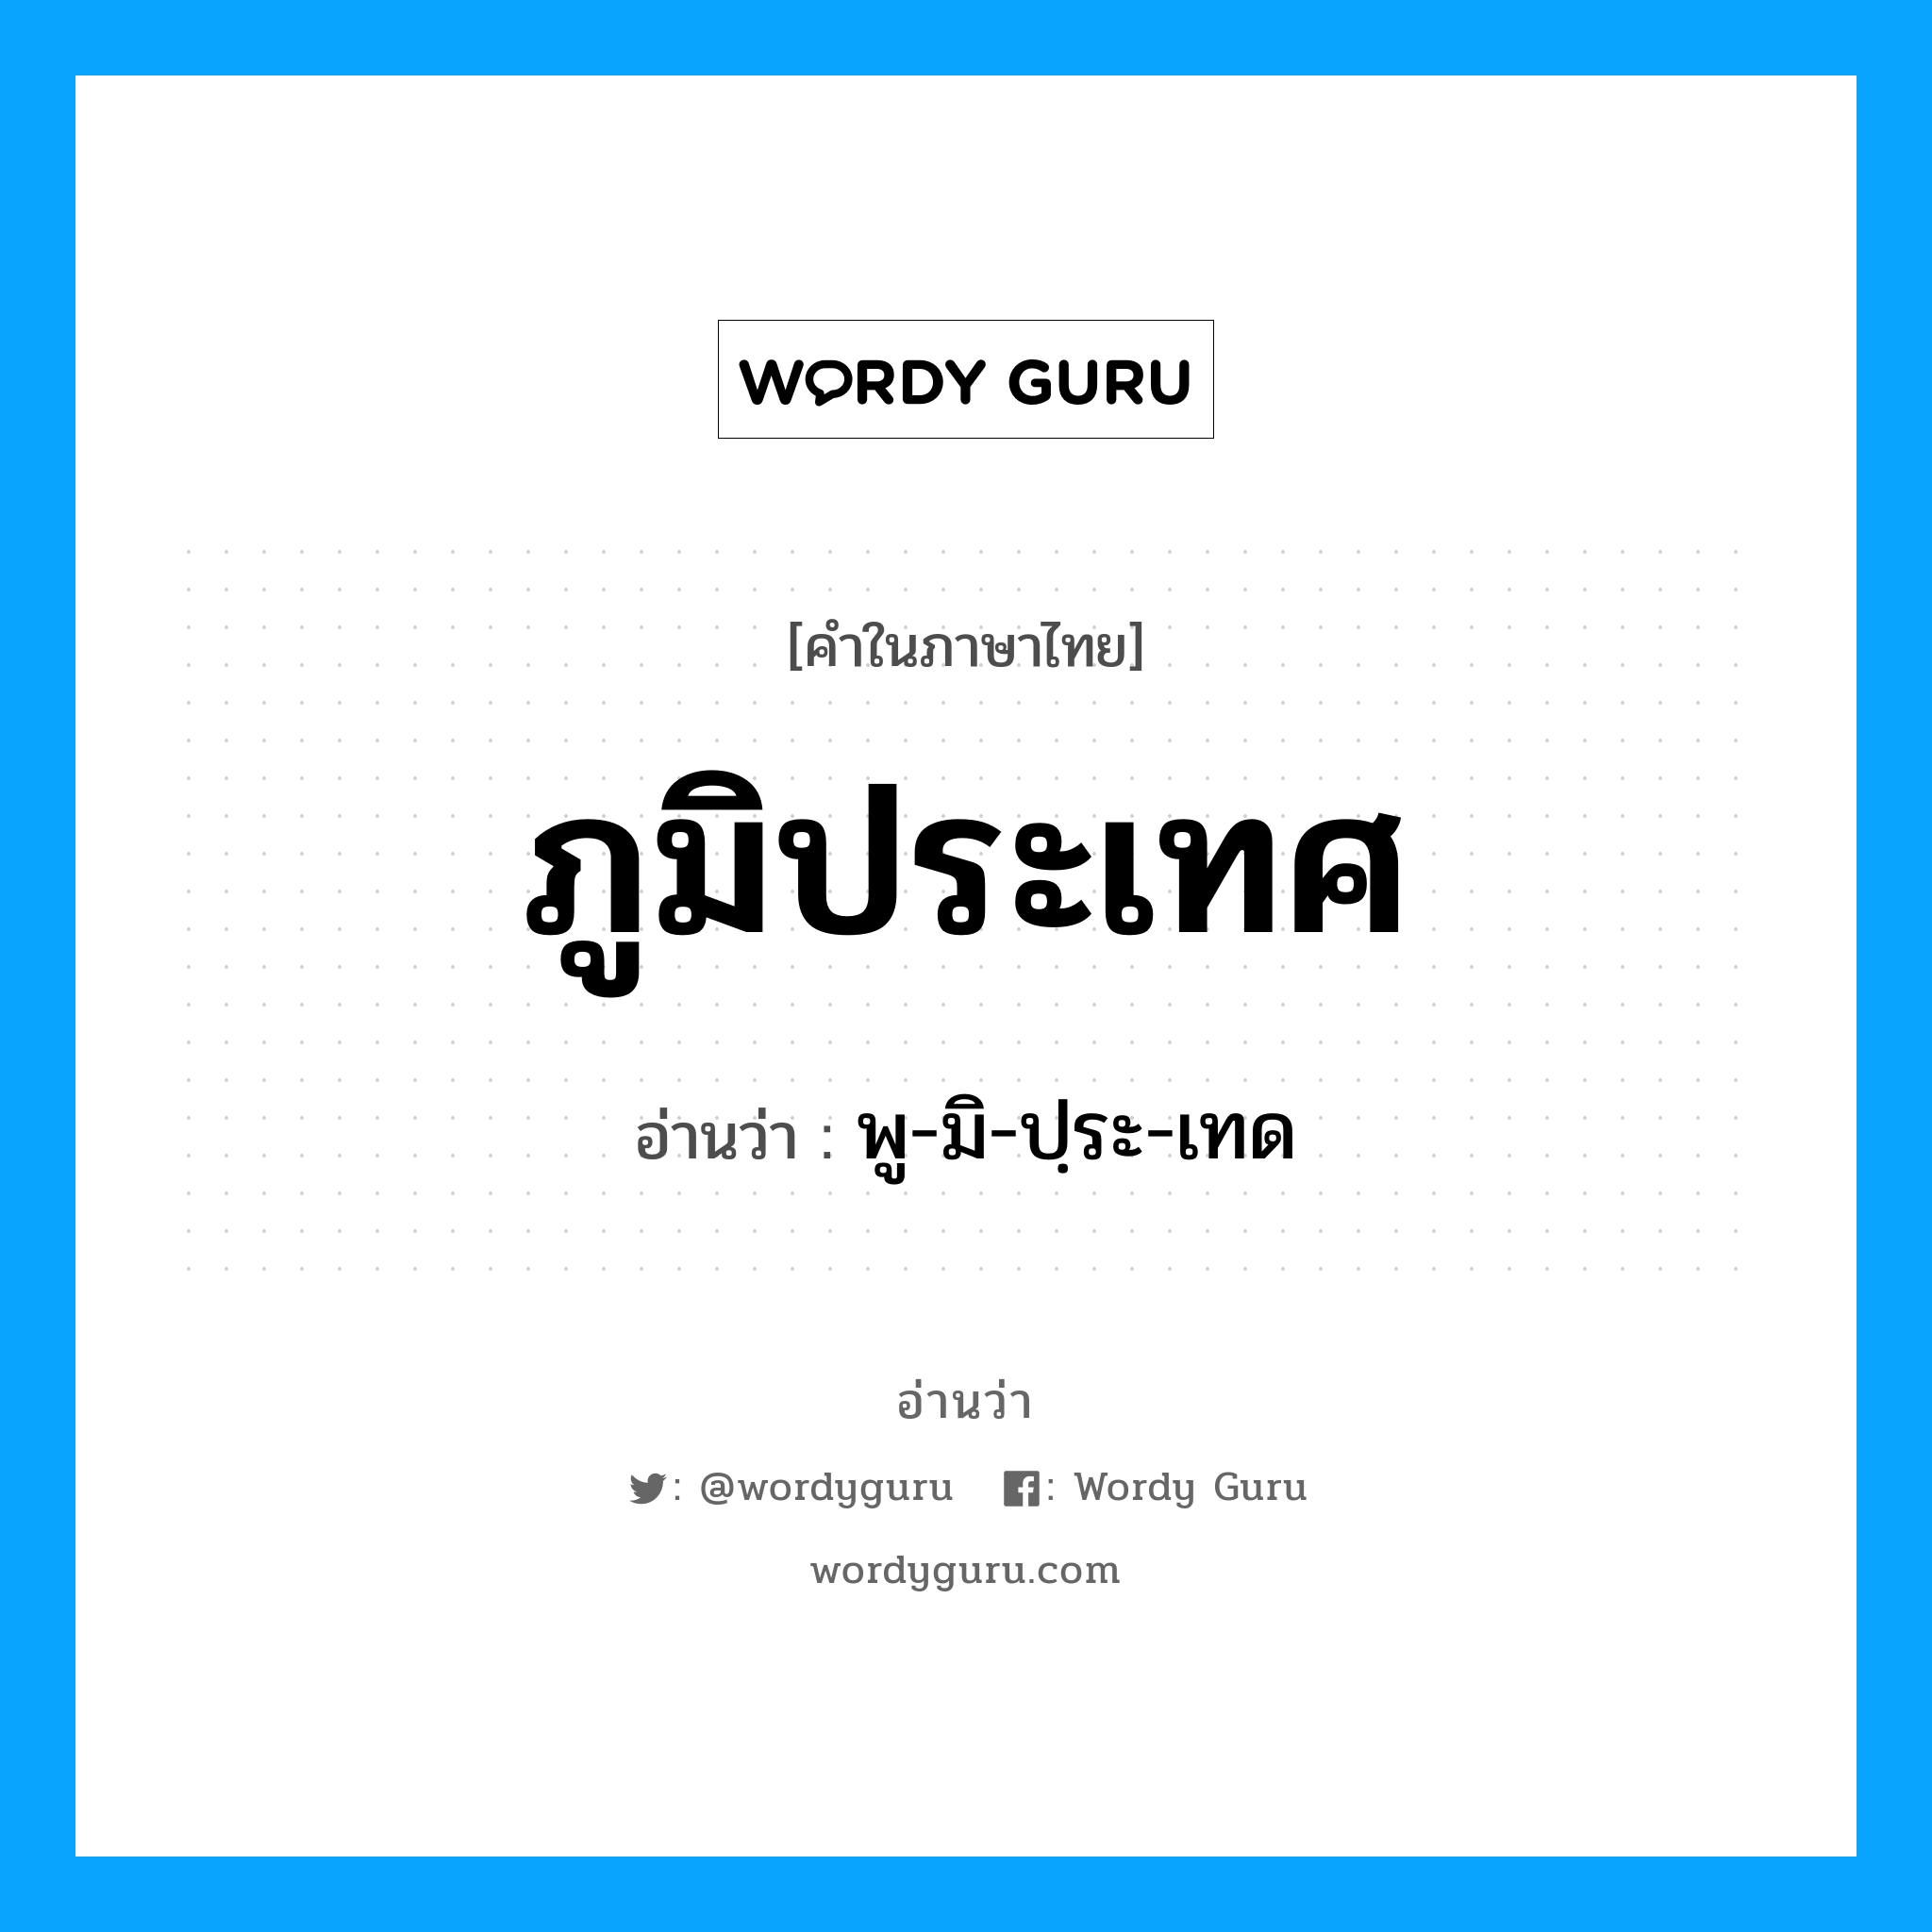 พู-มิ-ปฺระ-เทด เป็นคำอ่านของคำไหน?, คำในภาษาไทย พู-มิ-ปฺระ-เทด อ่านว่า ภูมิประเทศ